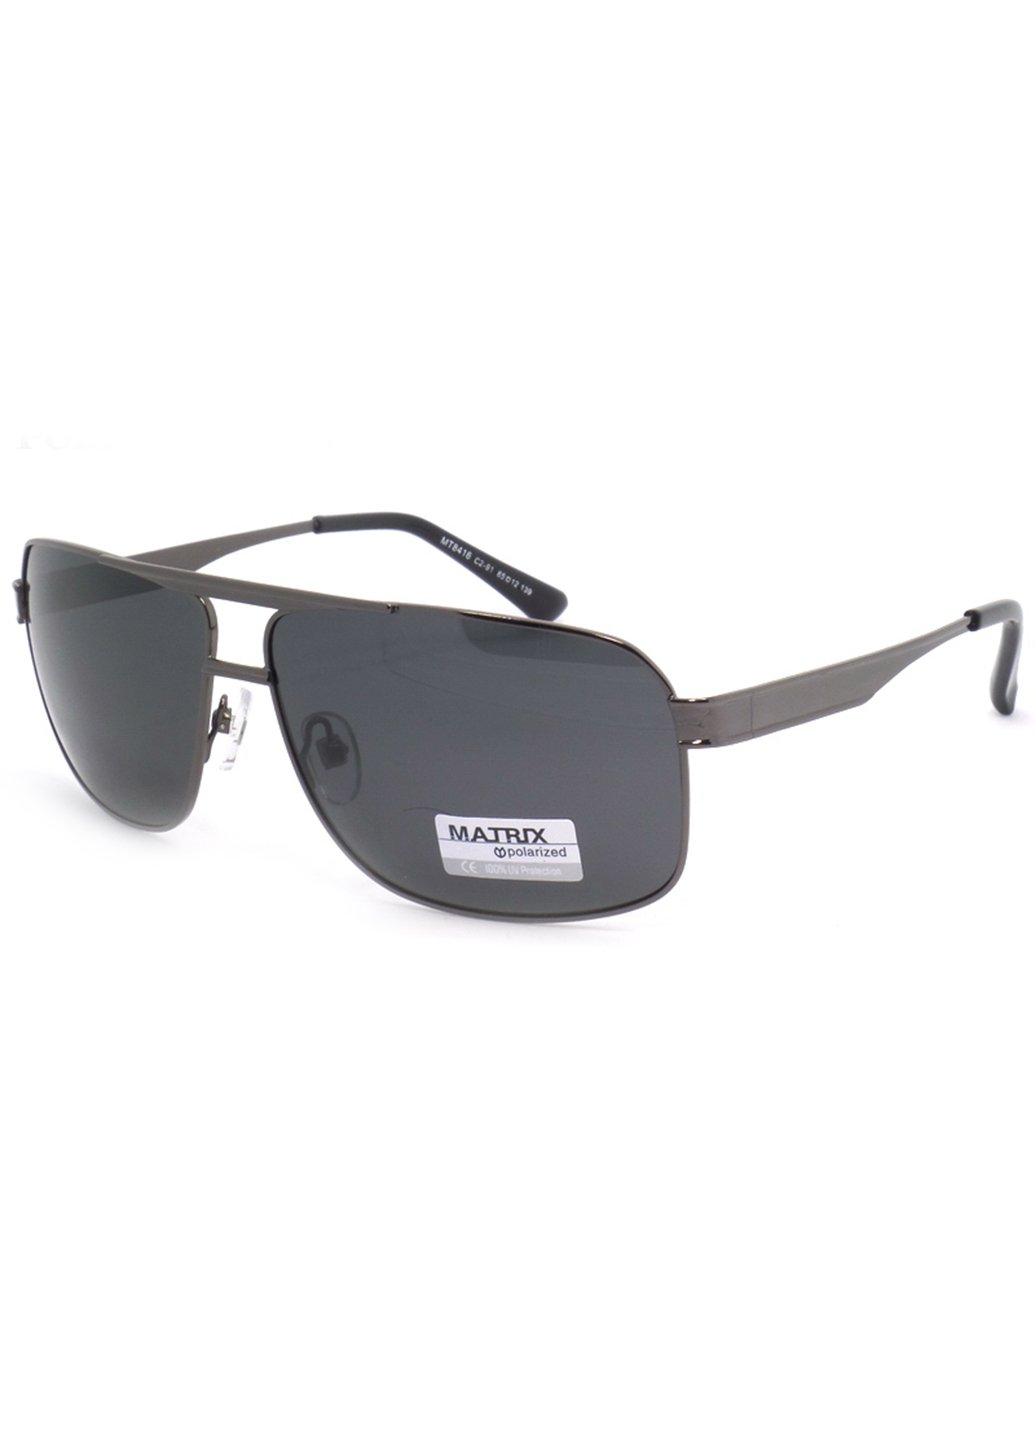 Купить Черные мужские солнцезащитные очки Matrix с поляризацией MT8416 111016 в интернет-магазине